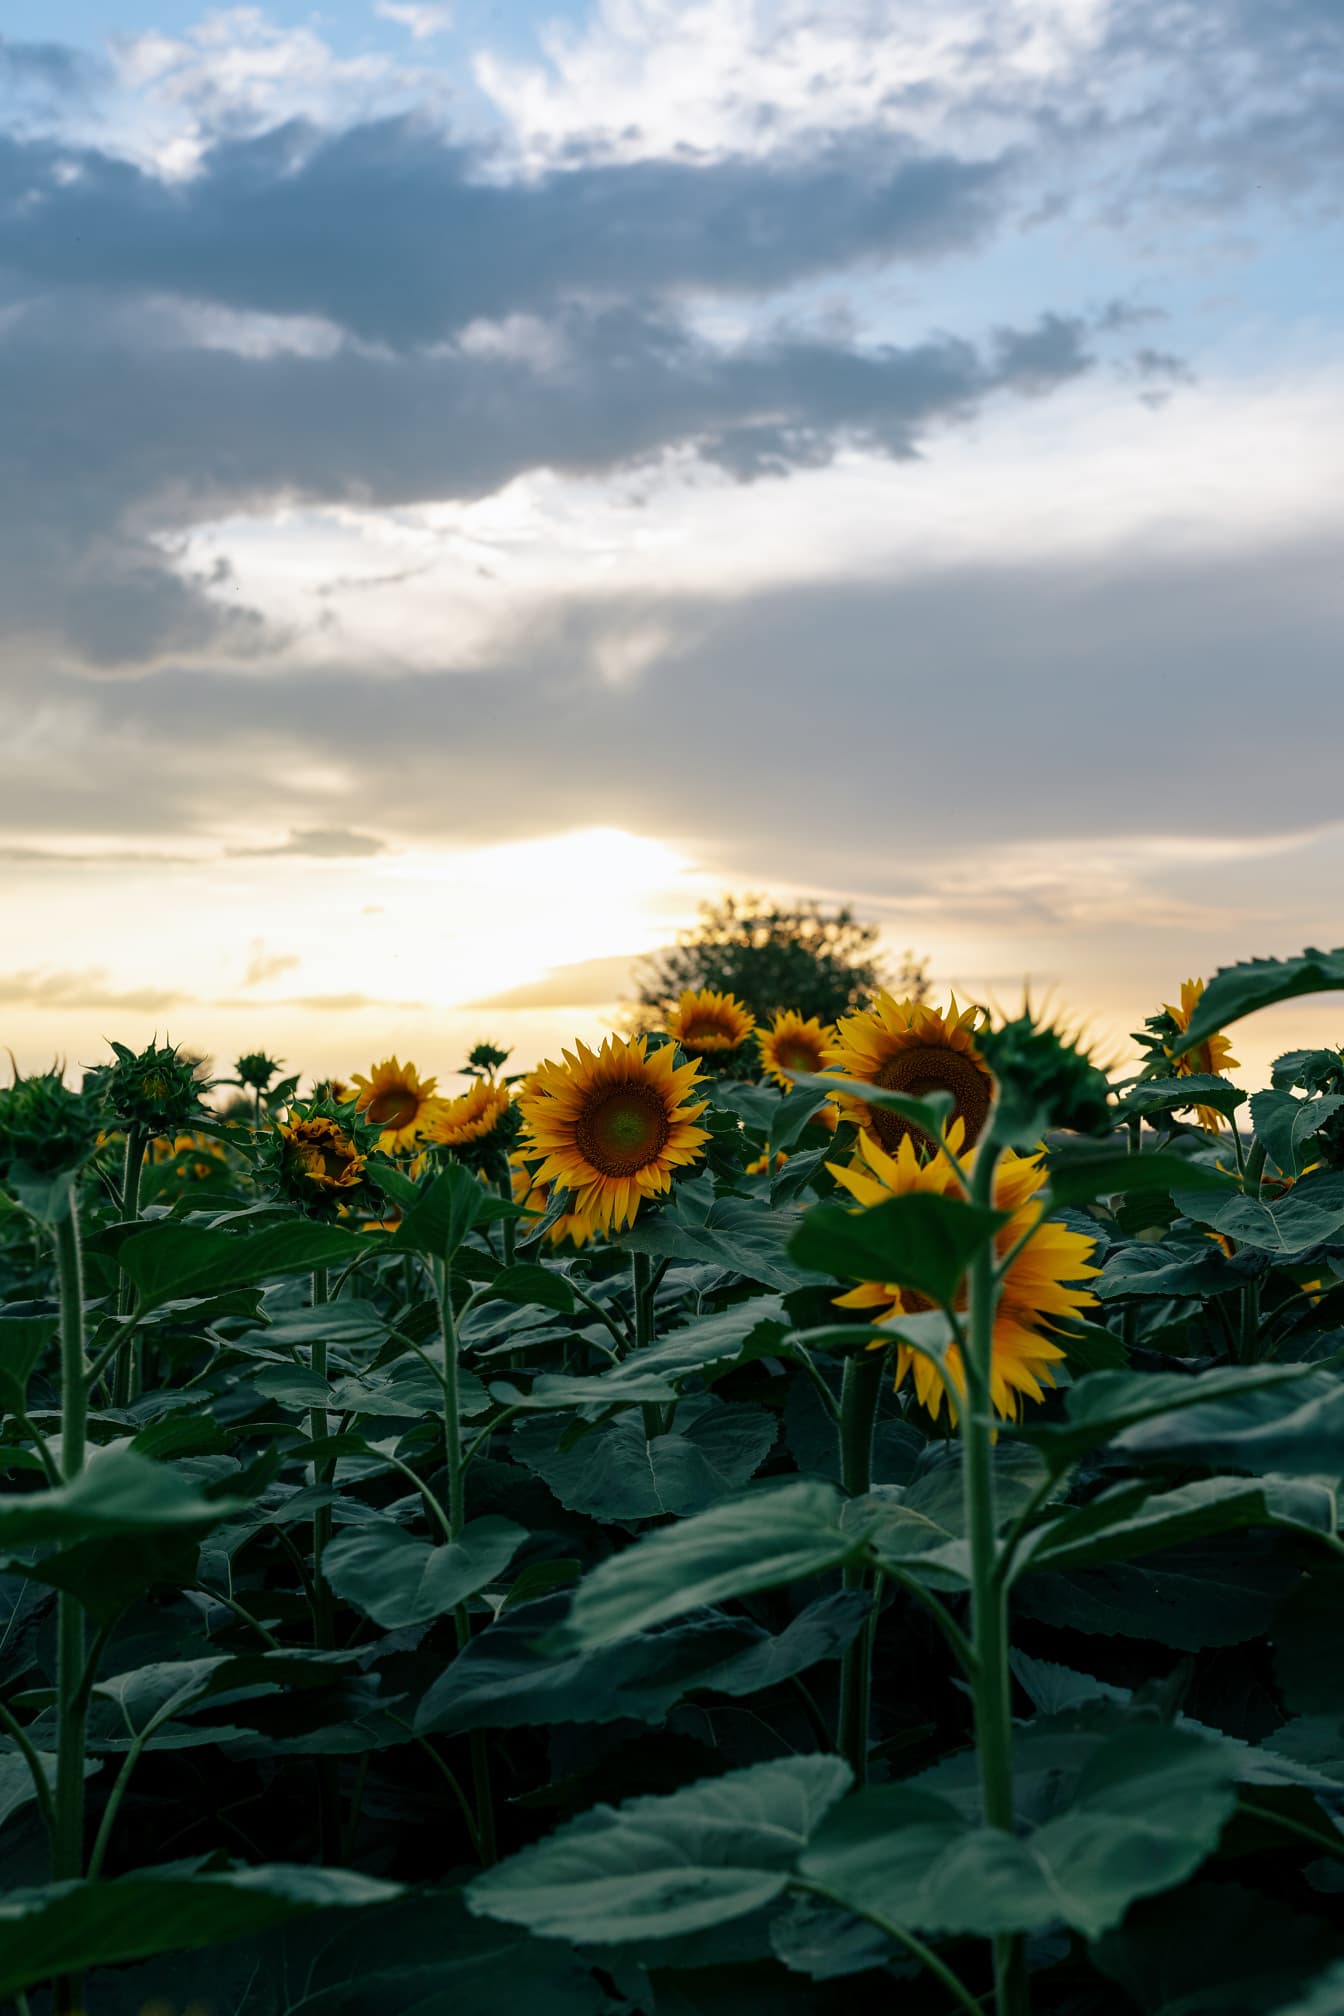 Ladang pertanian bunga matahari di senja di bawah langit mendung